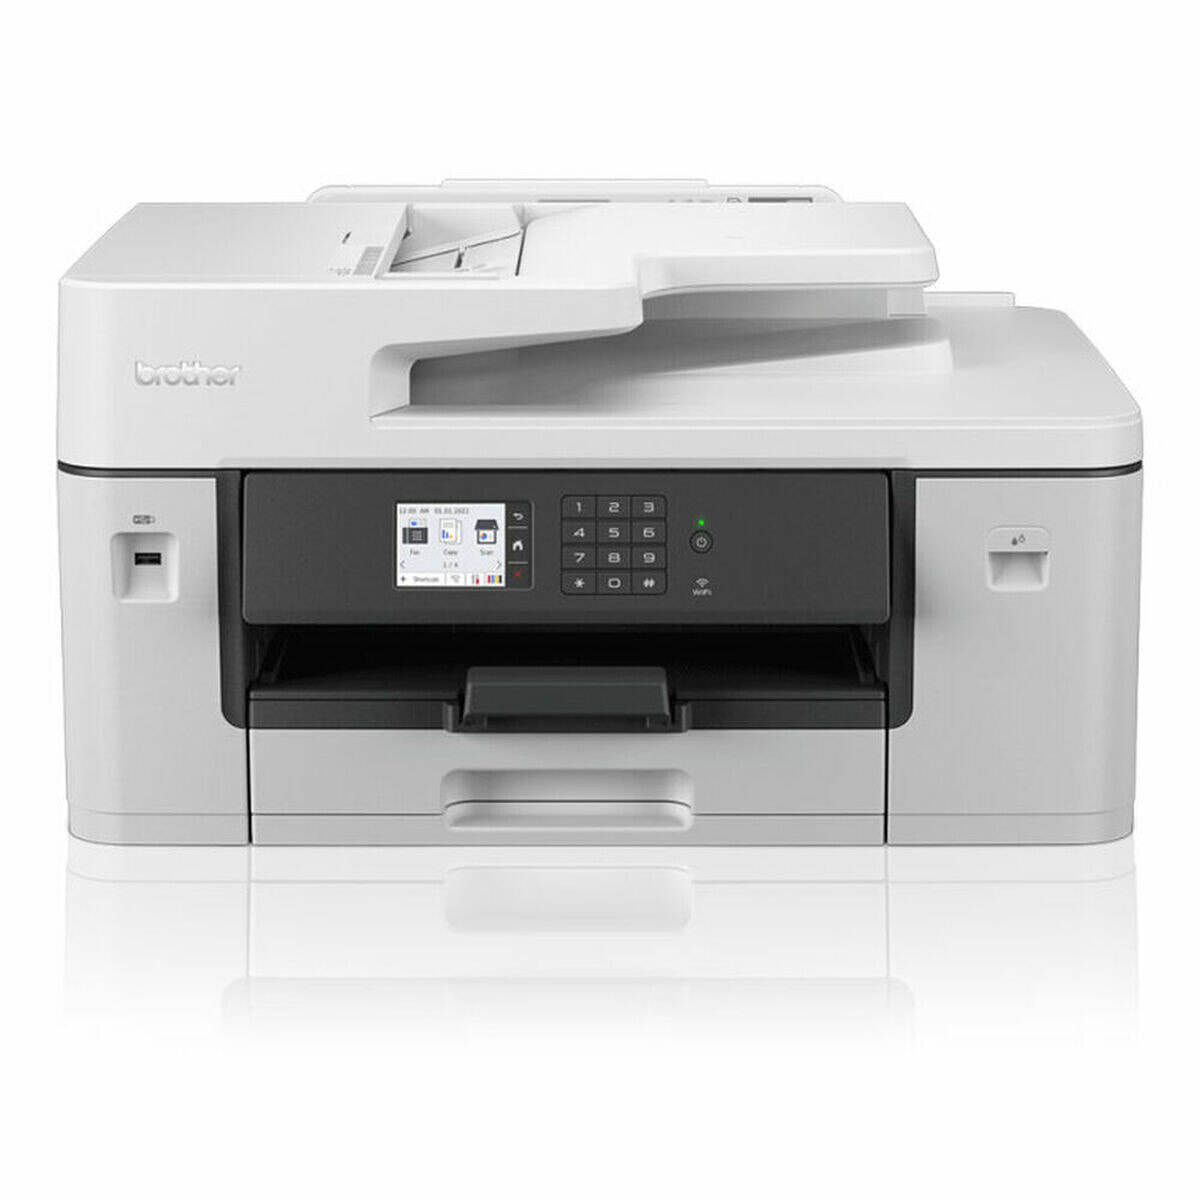 Мультифункциональный принтер Brother MFC-J6540DW